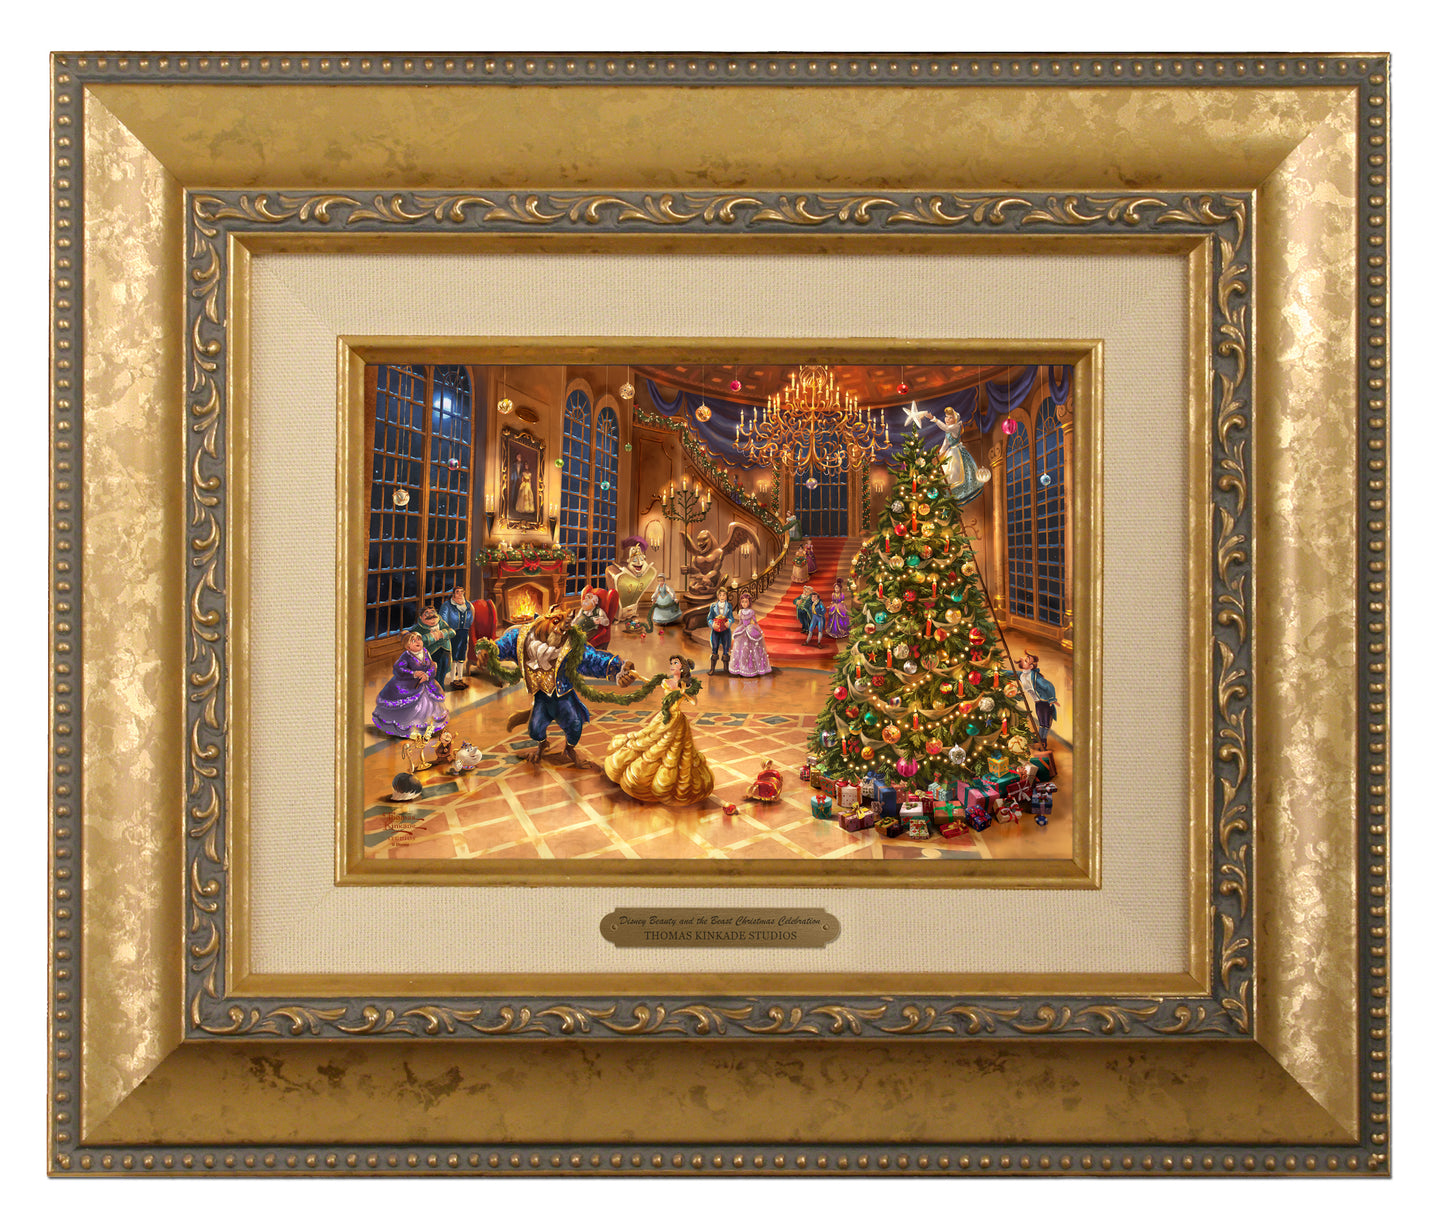 158463_Disney Beauty and the Beast Christmas Celebration_5x7_BRUSHSTROKE_Framed_Gold.jpg